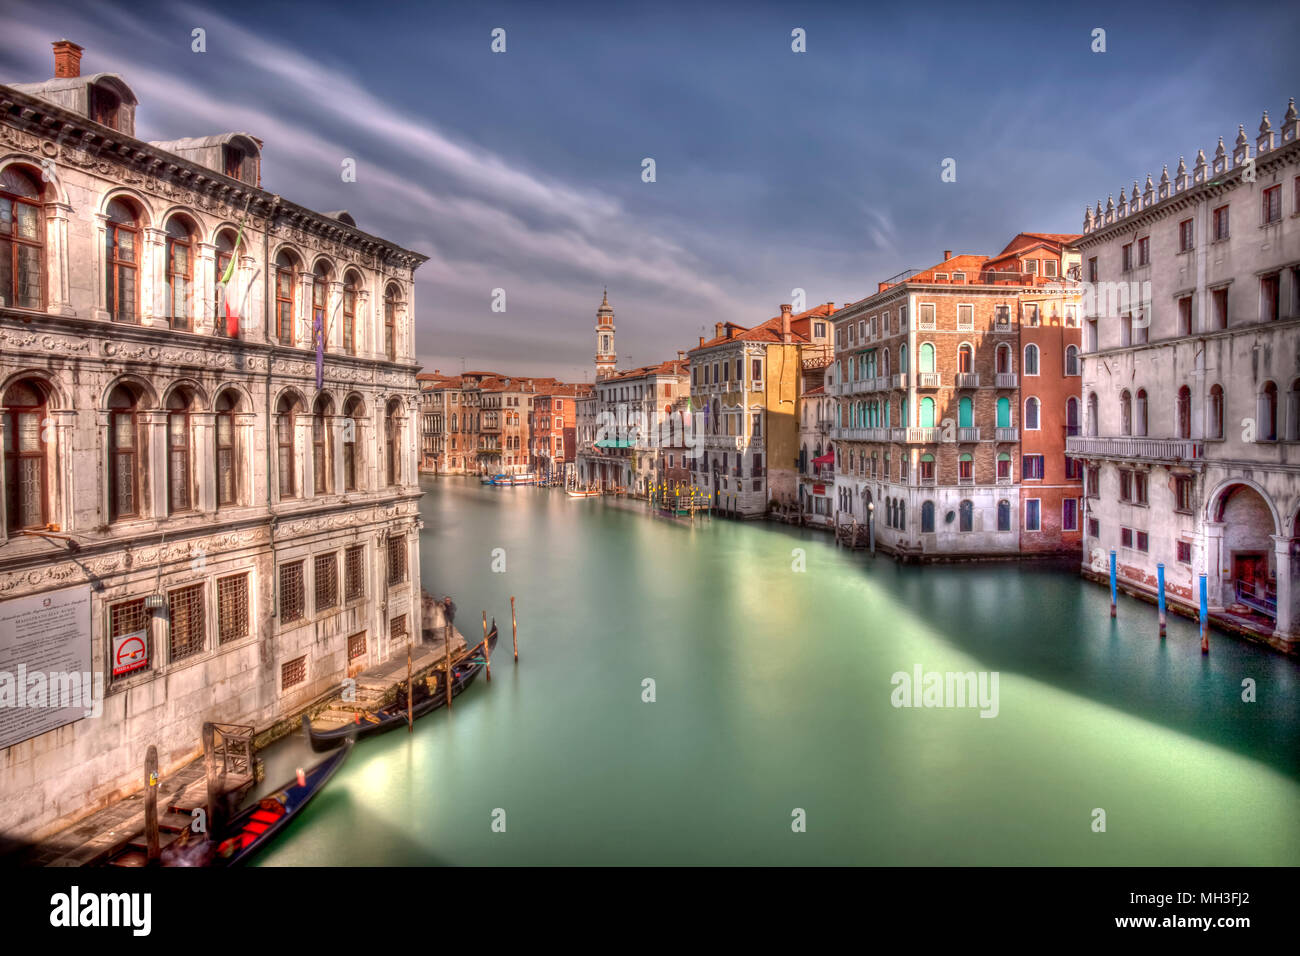 Le Grand Canal et l'architecture de Venise, Venise, Italie Banque D'Images